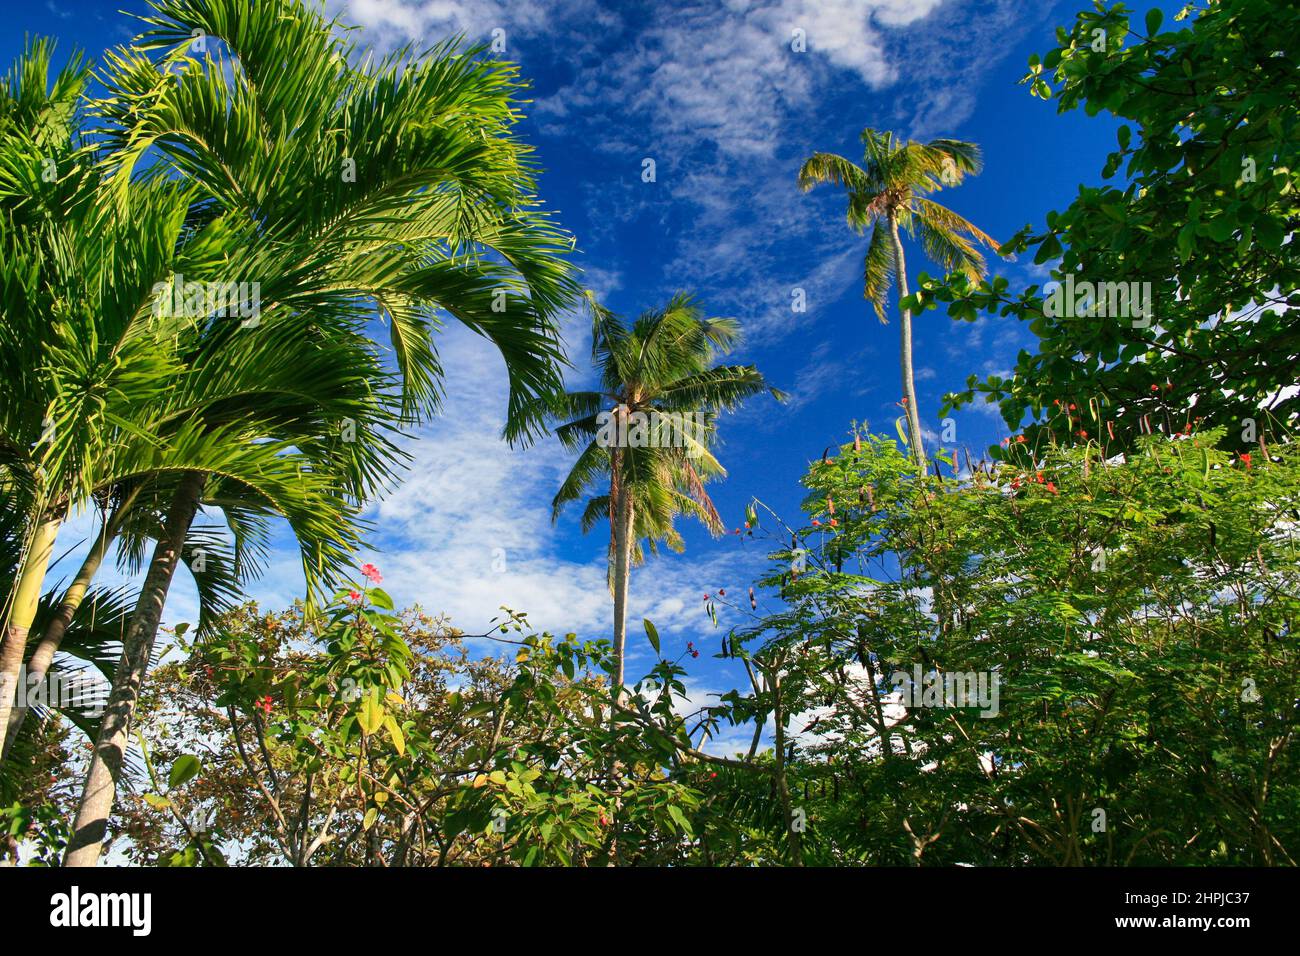 Un'immagine a basso angolo di lussureggianti palme verdi in una chiara giornata estiva blu a Cebu, Visayas Foto Stock